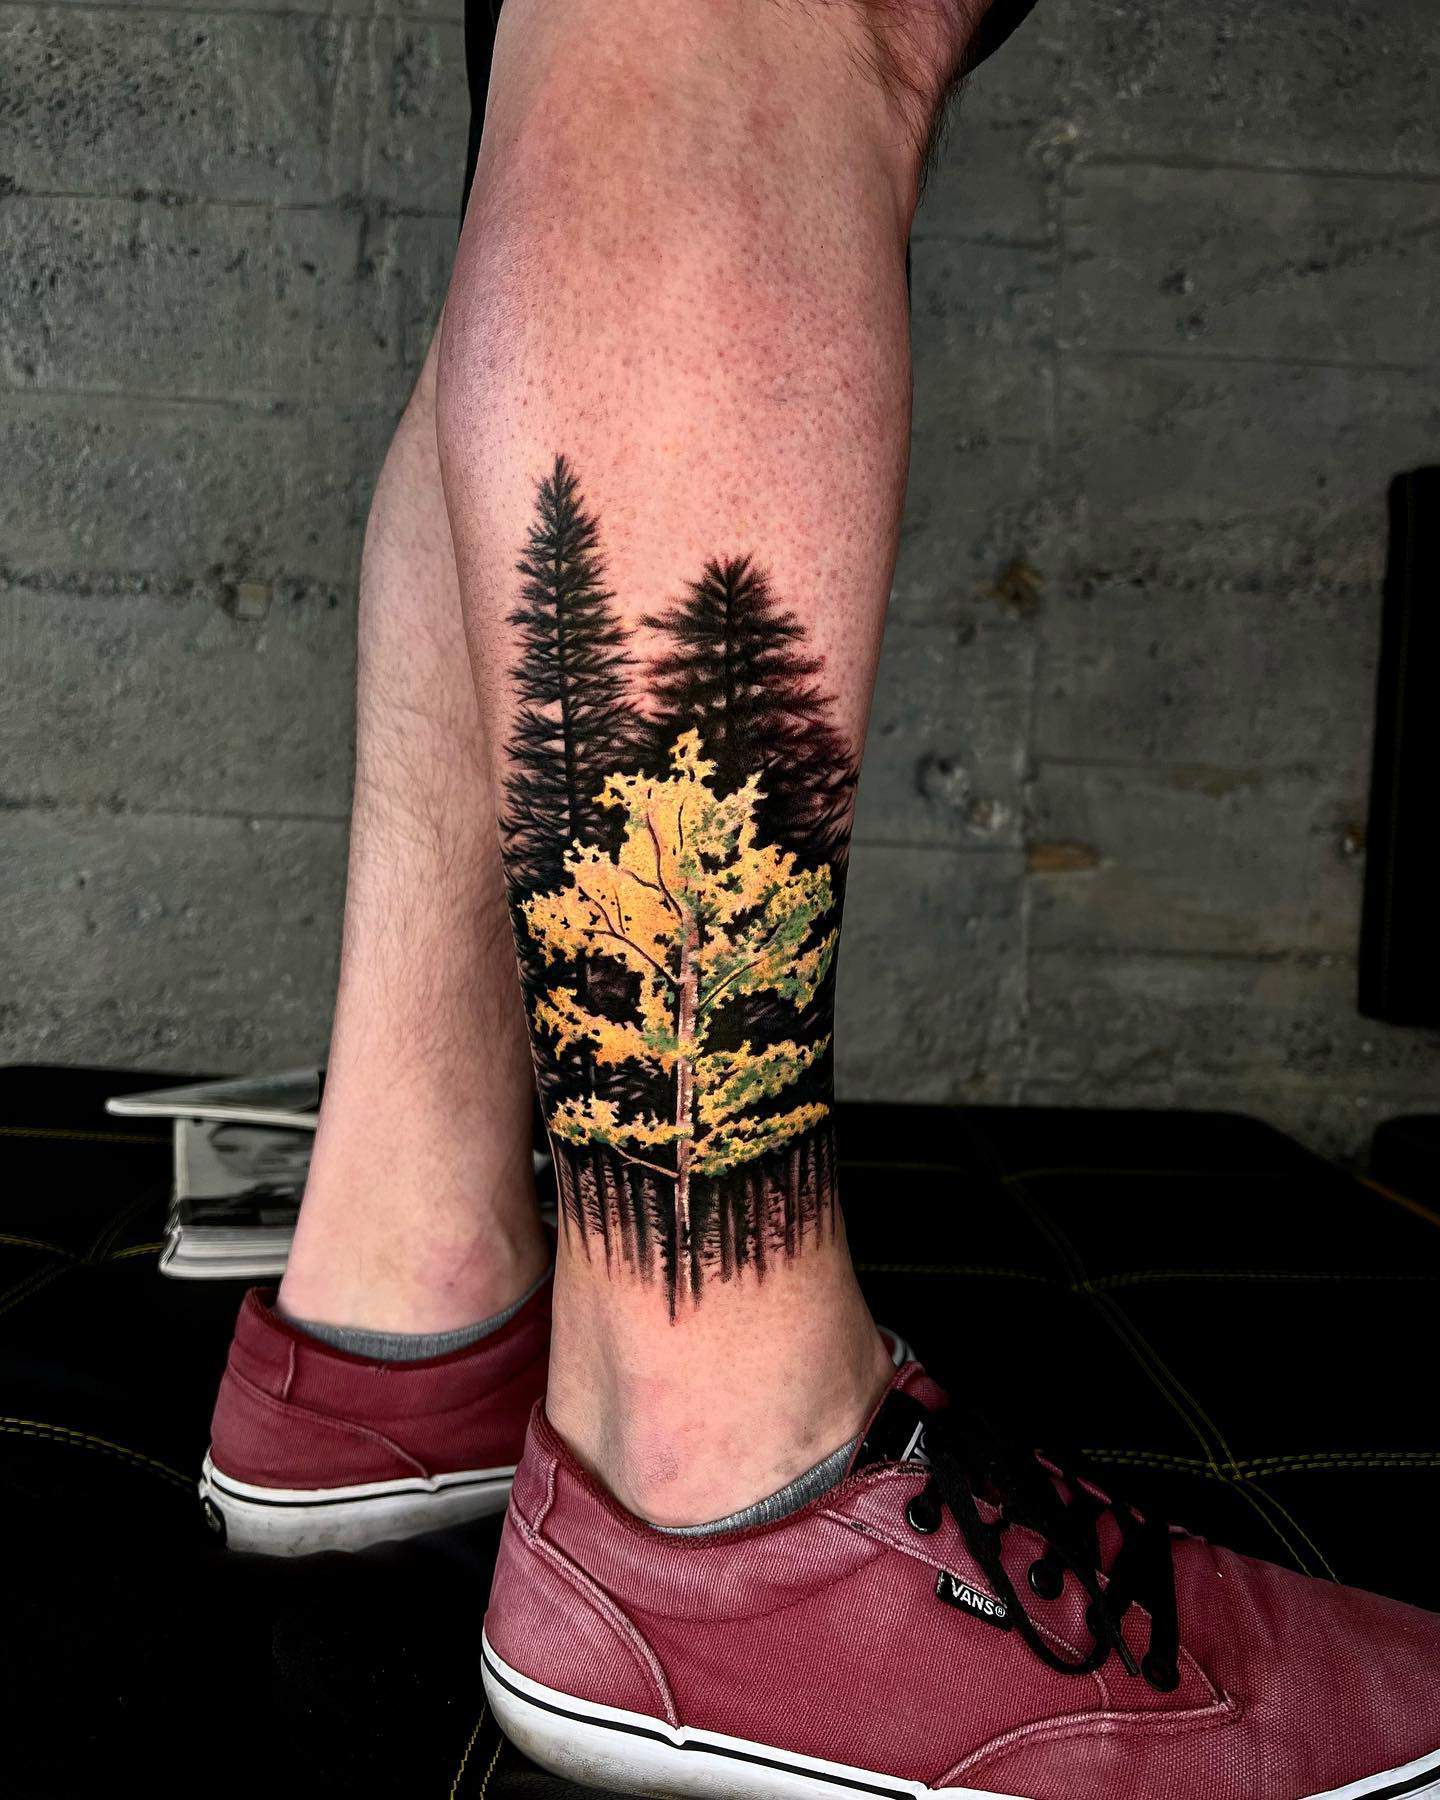 Tatuaje en la pierna representando un bosque